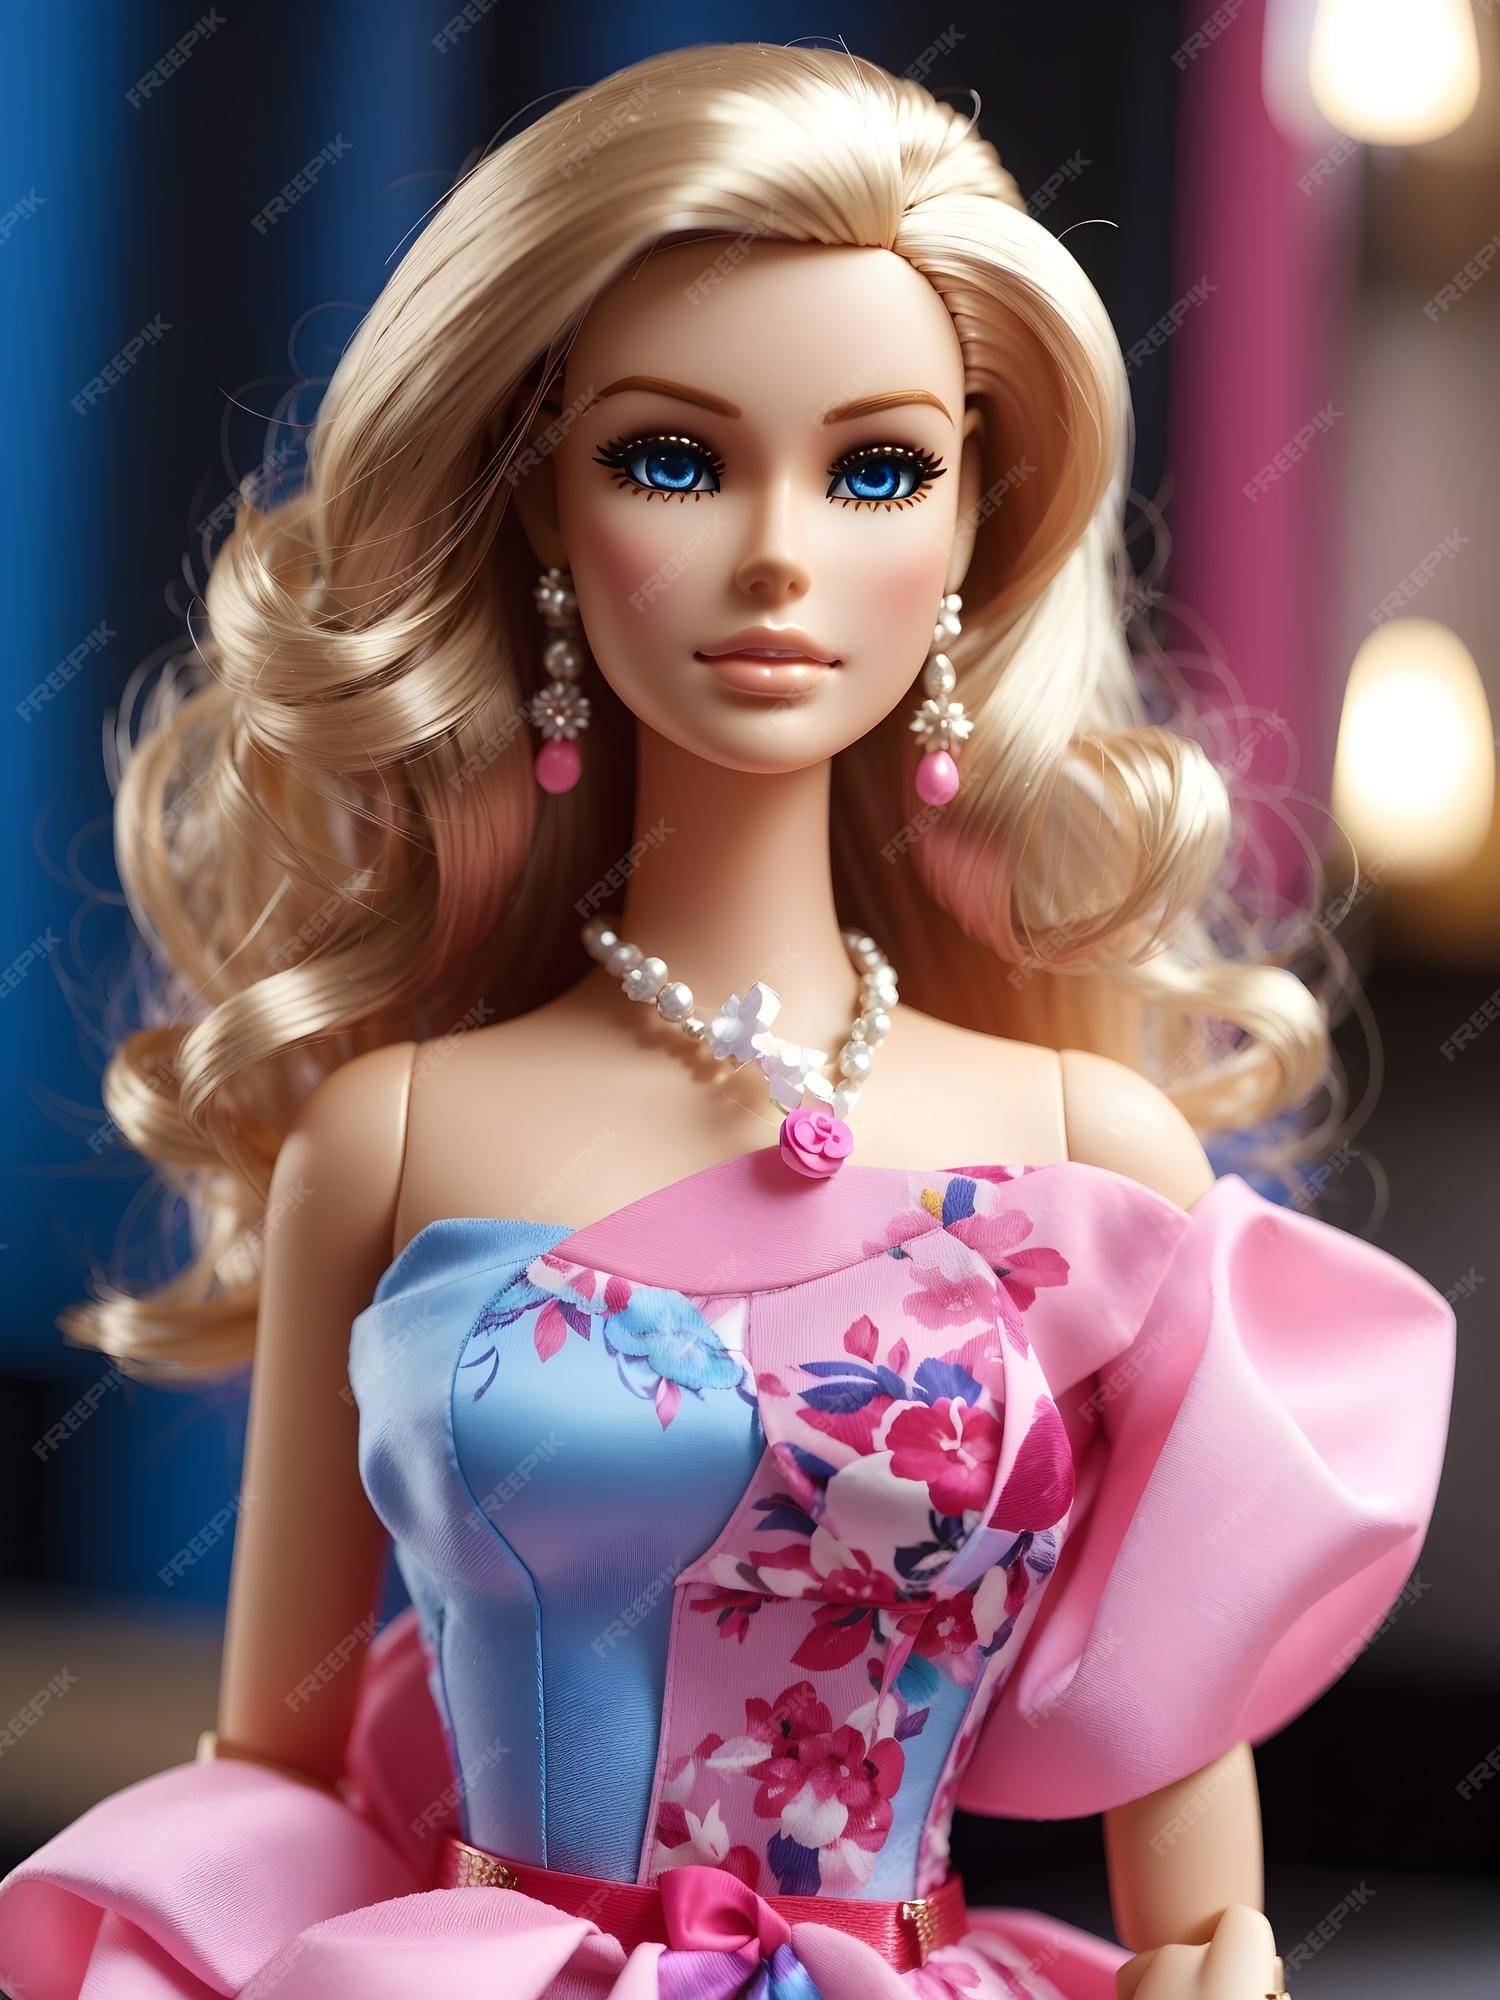 Linda boneca barbie com roupas da moda 3 barbie olhos azuis de